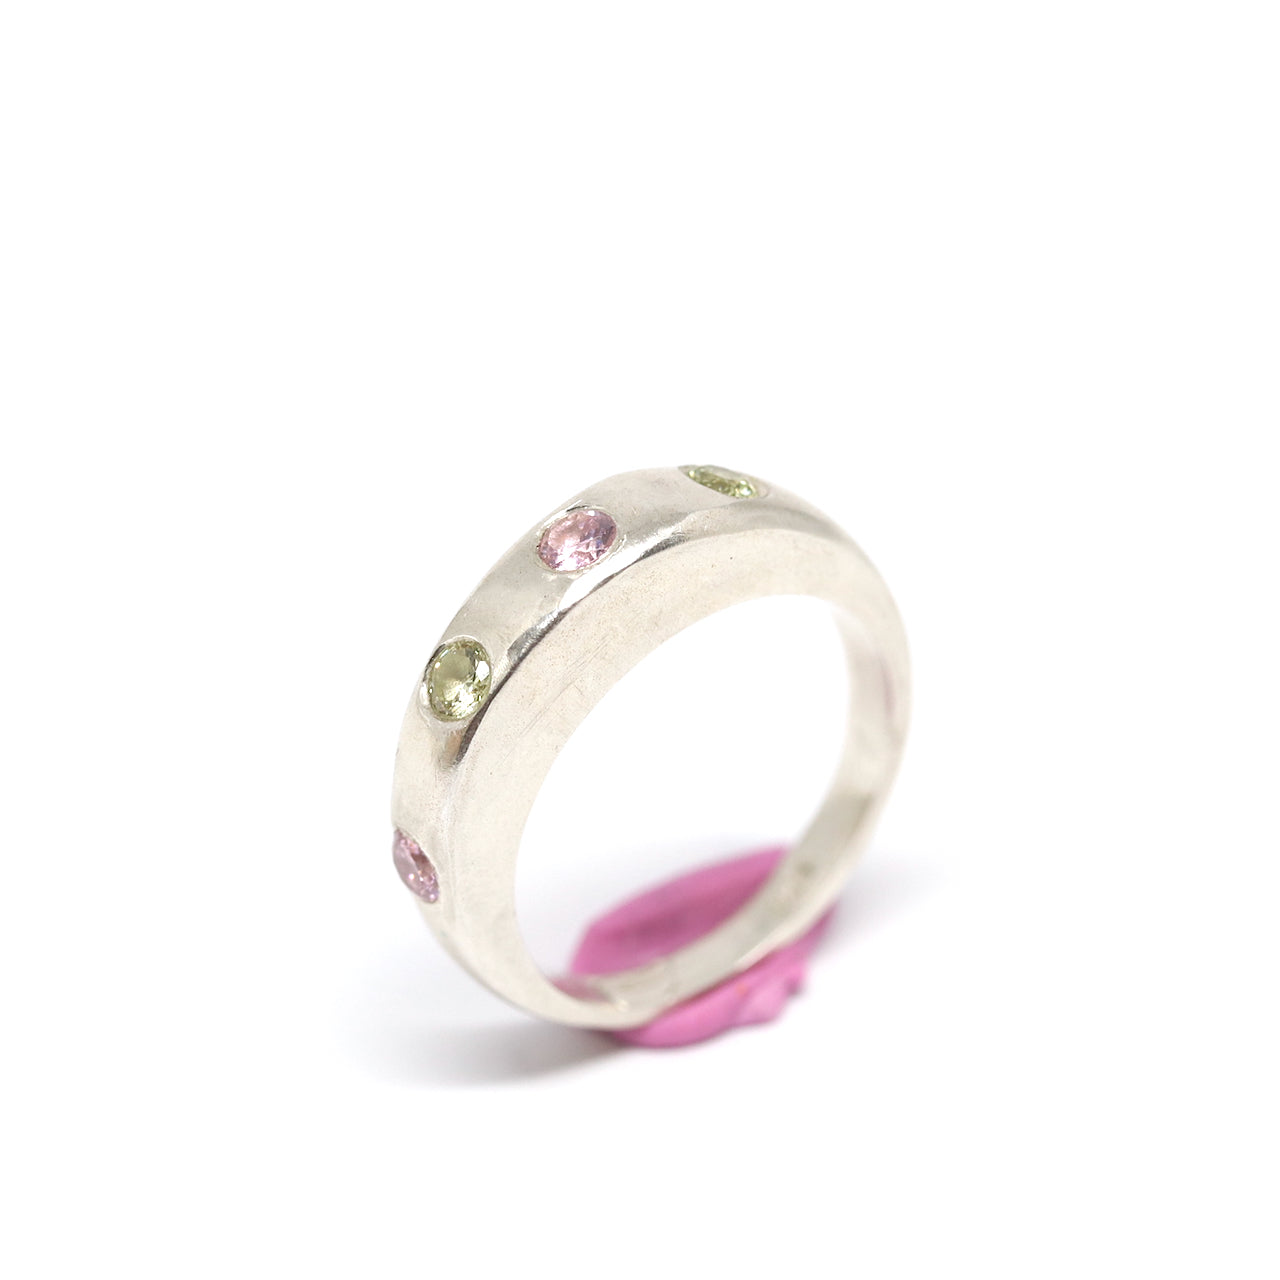 Ring - 4 Gem Royal - Pink & Green